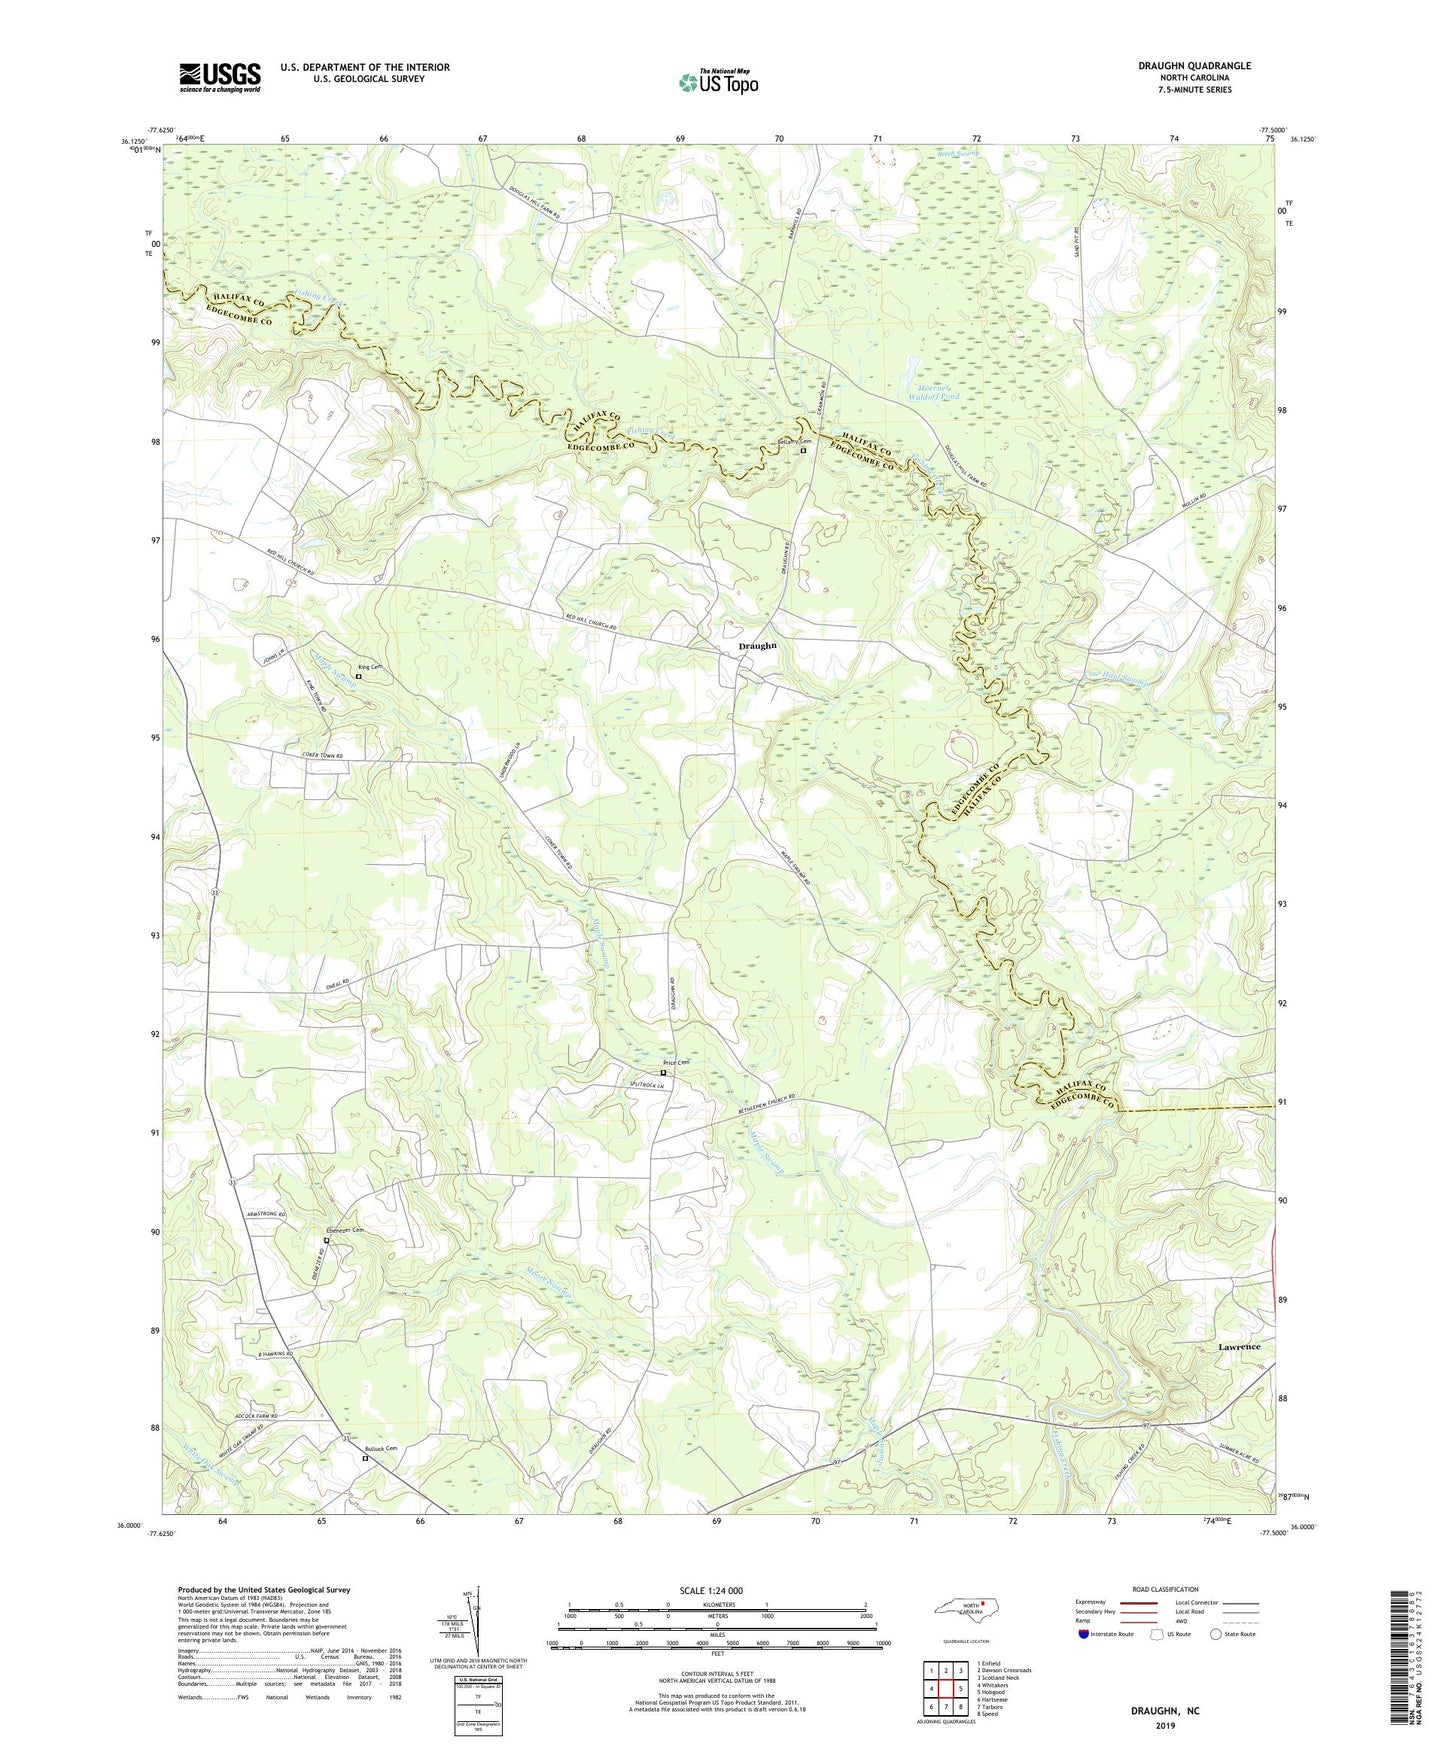 Draughn North Carolina US Topo Map Image